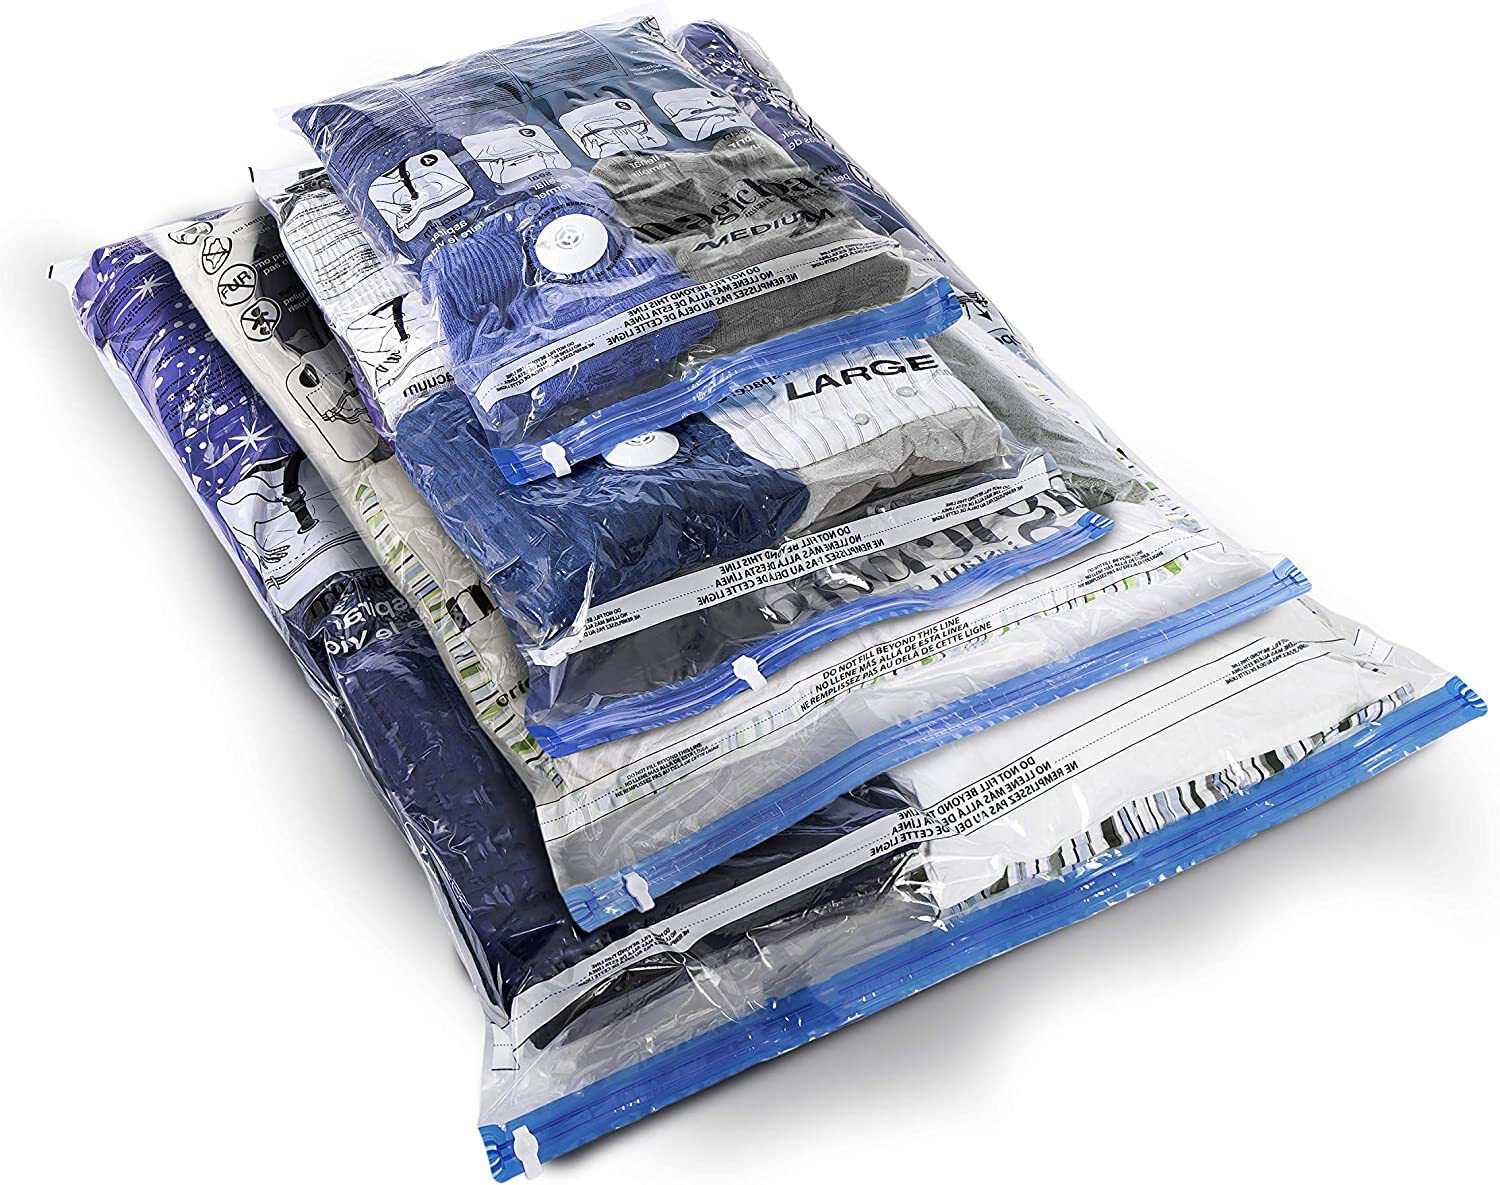 Ziploc Space Bag Clothes Vacuum Sealer Storage Bags L/XL, 2 Bags Total  (Each) 